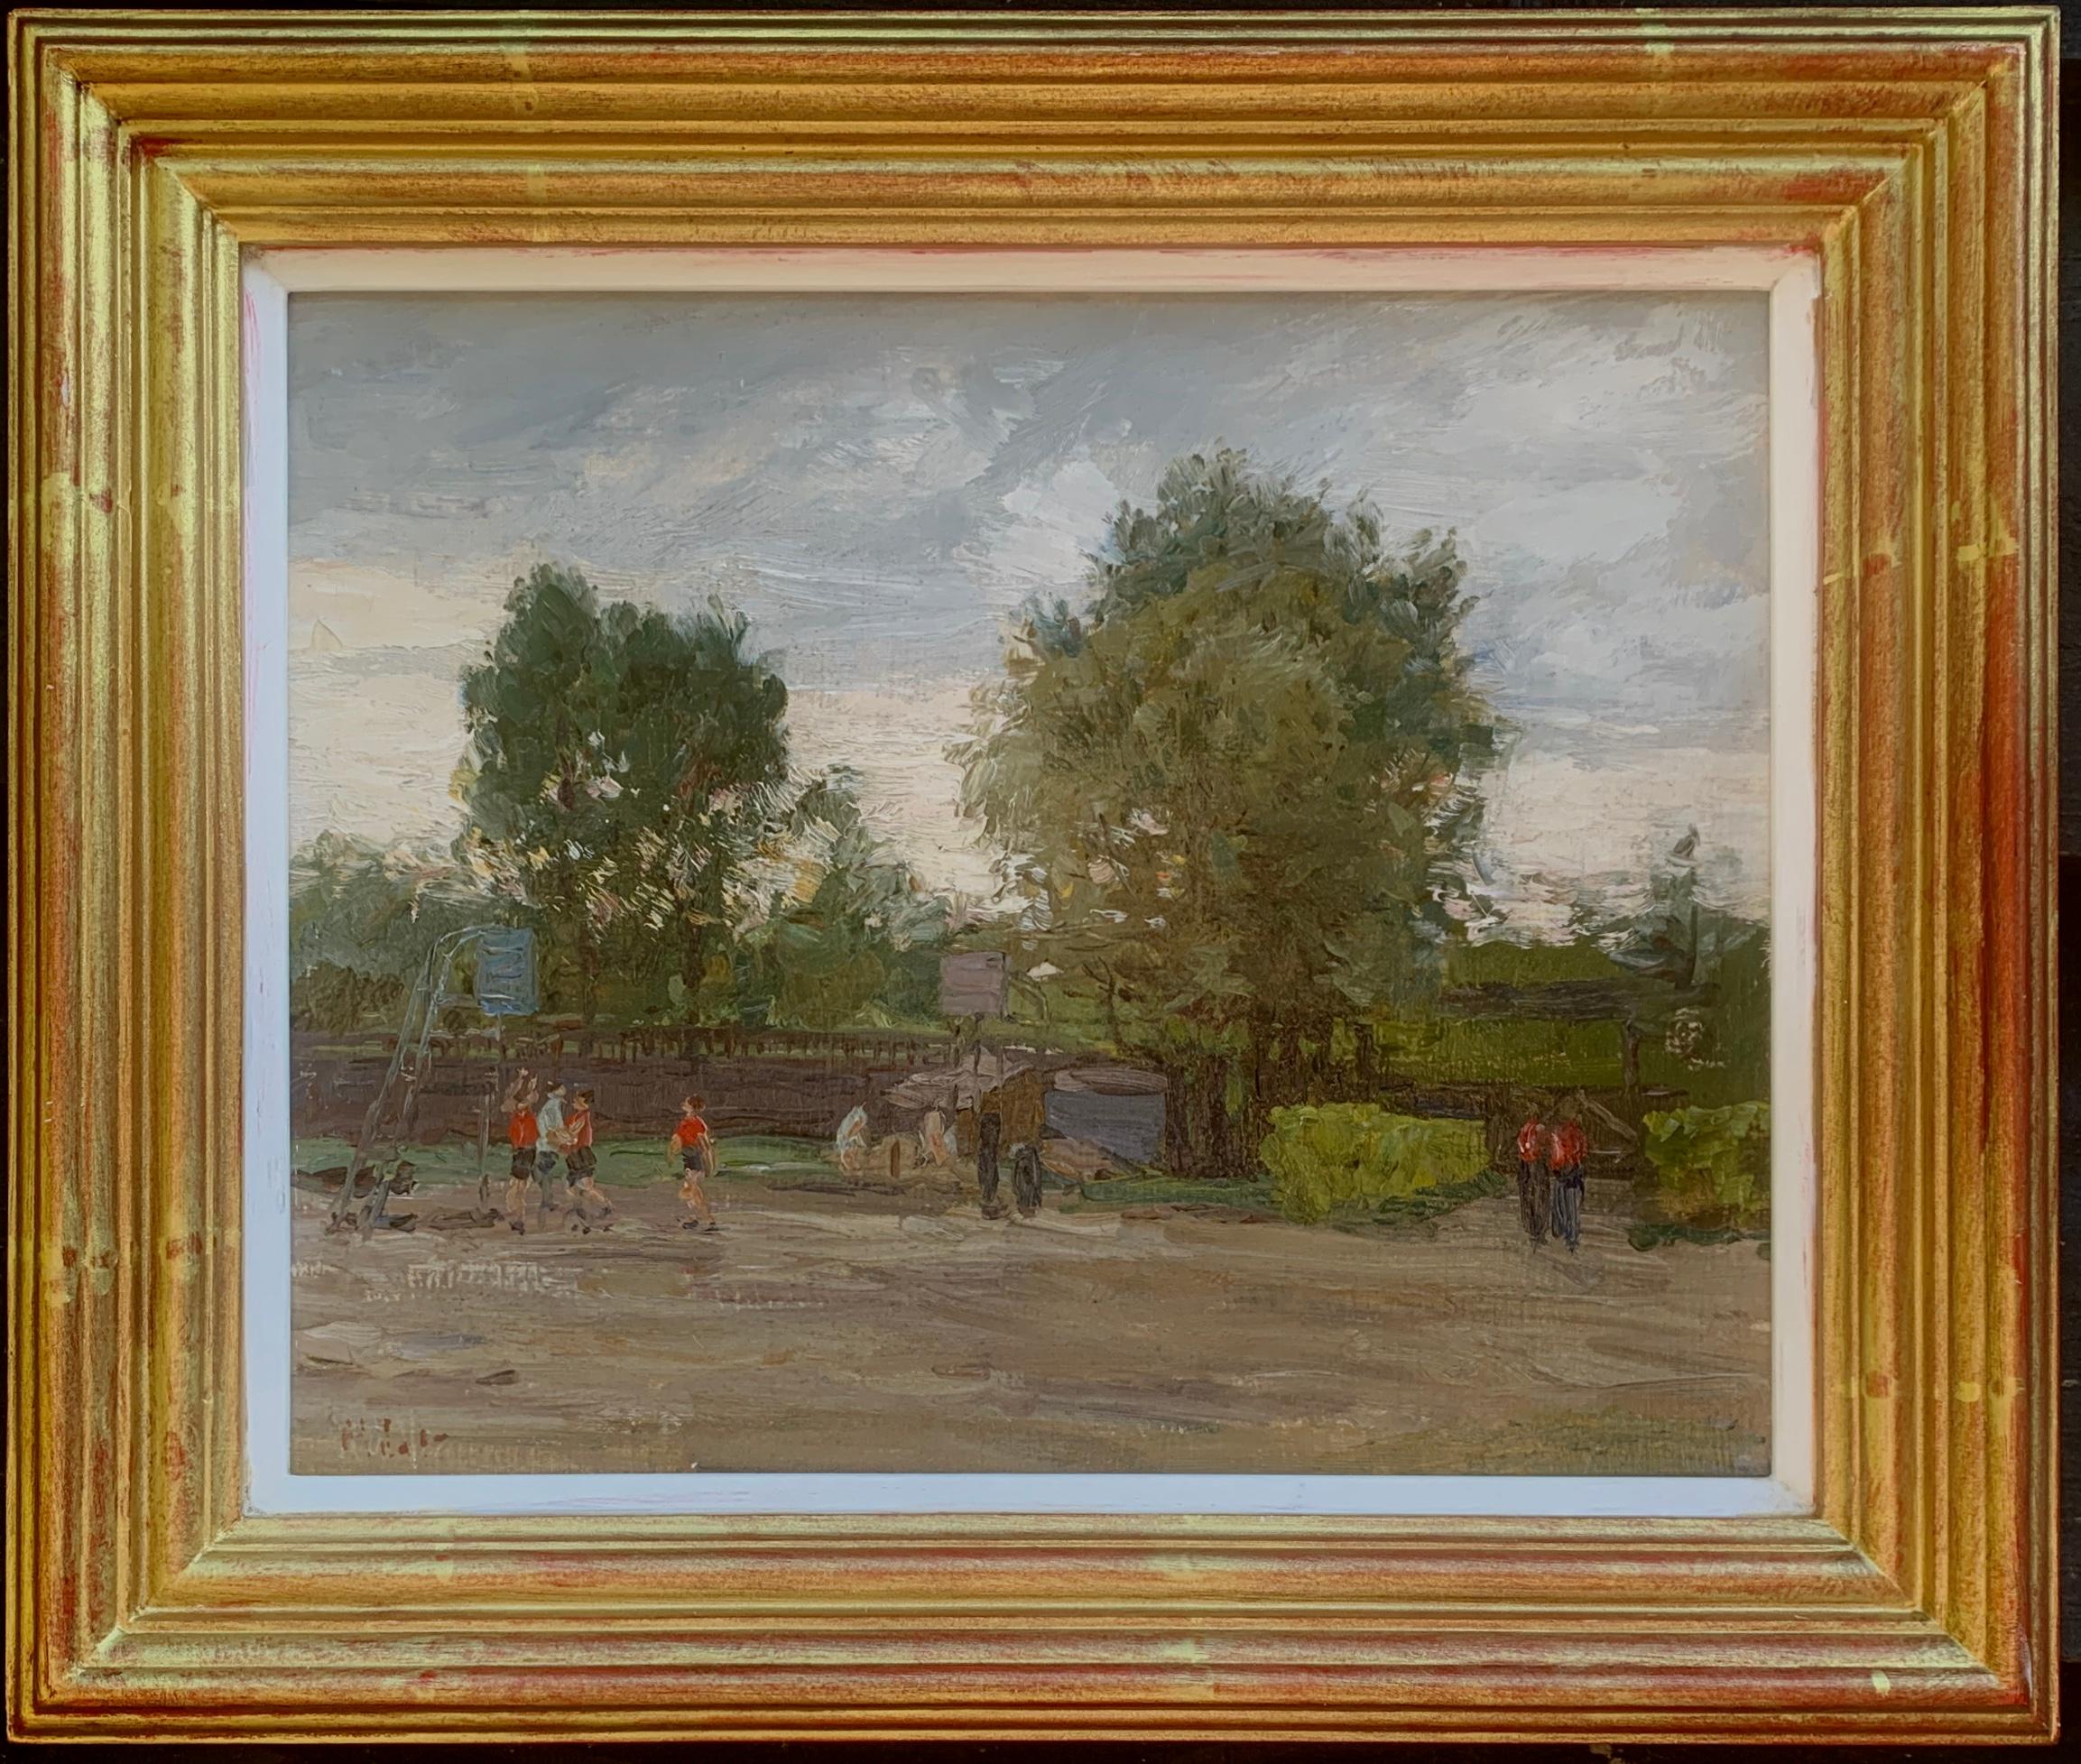 Paysage impressionniste français, paysage du sud de la France, avec enfants jouant 